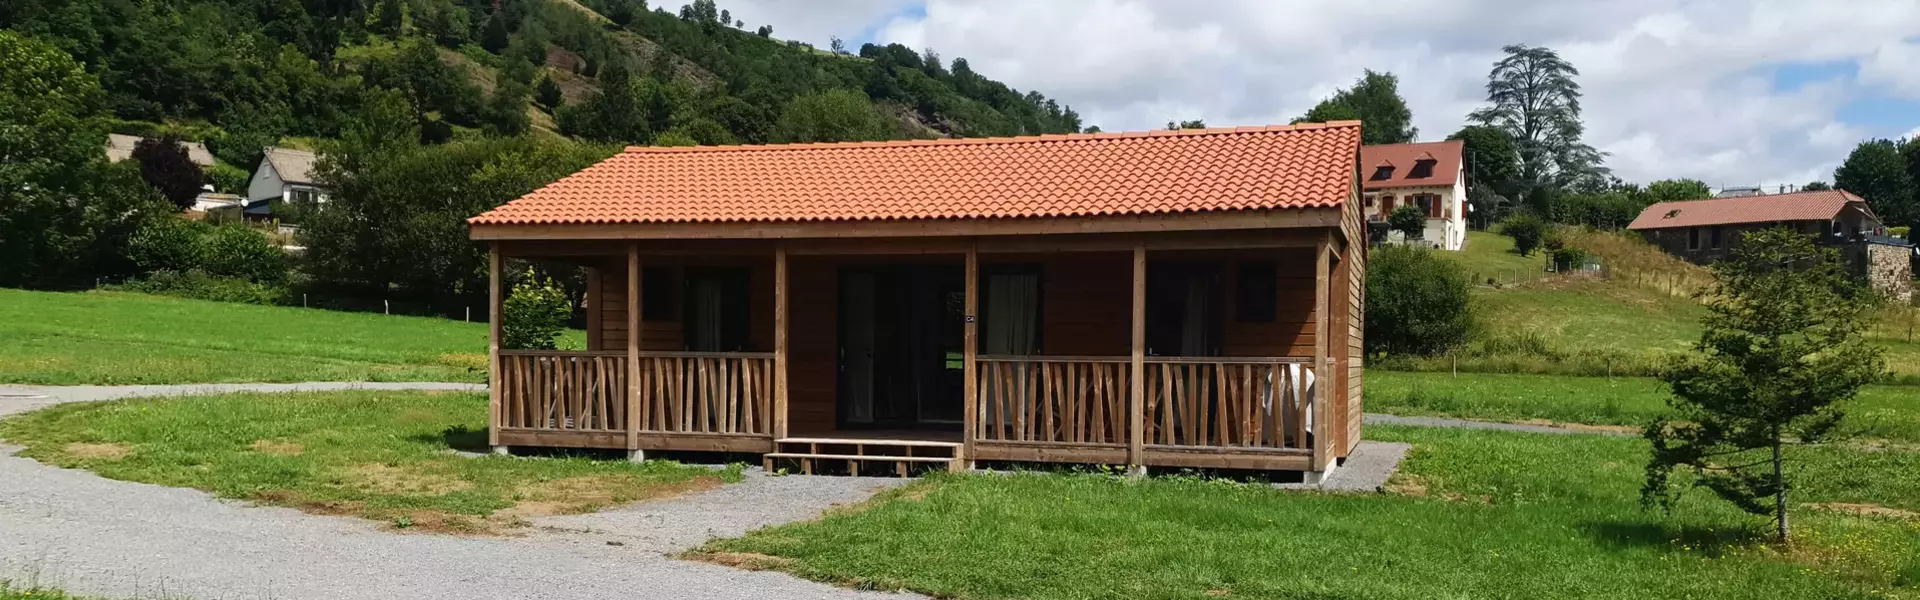 Gîtes et chalets - Le Lac des Graves en Auvergne - Cantal : Hôtel, restaurant, multi activités...